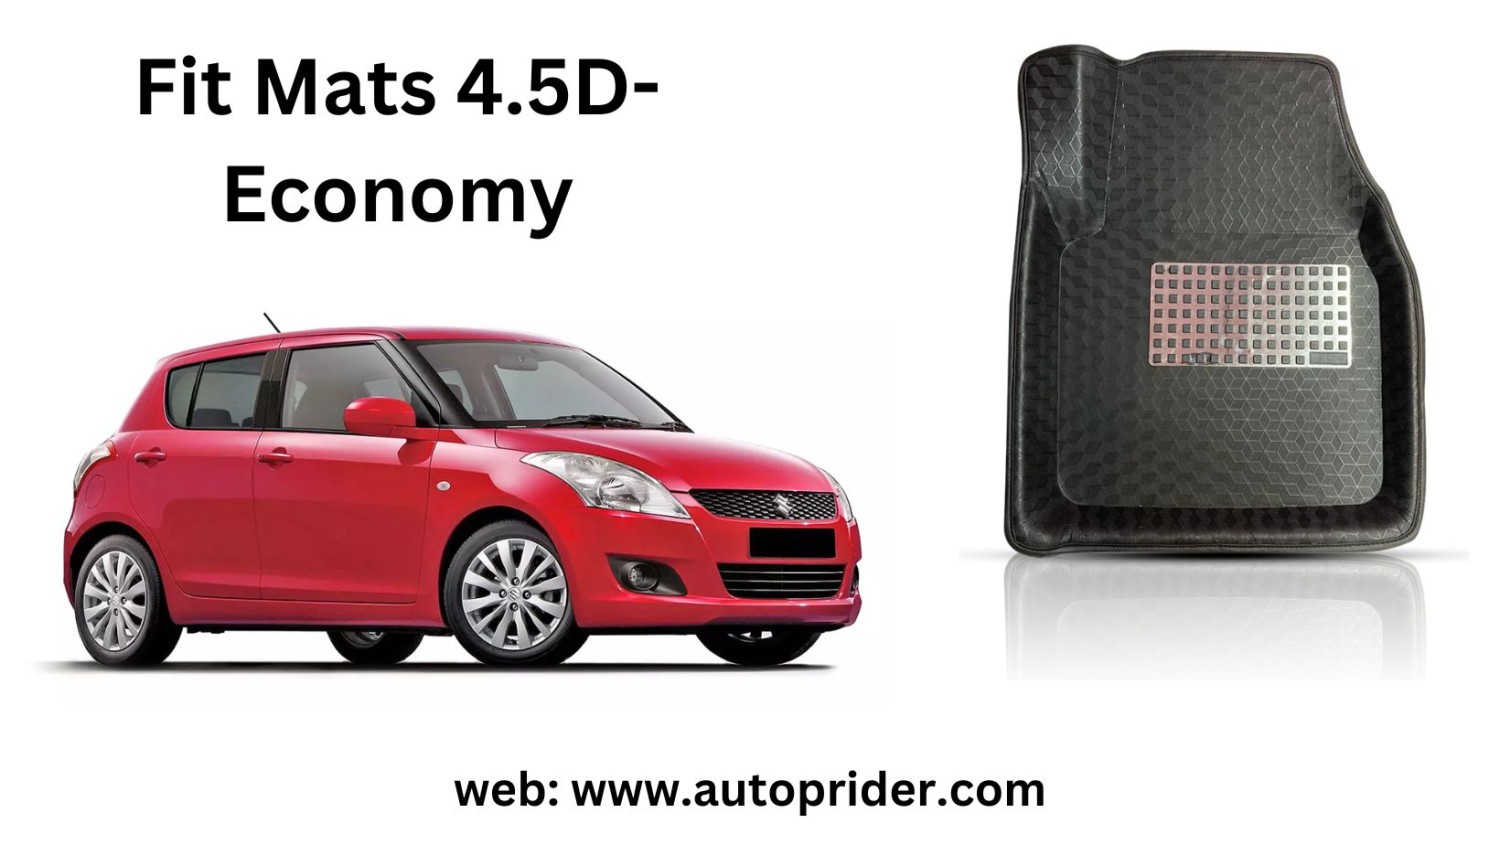 Autoprider | Fit Mats 4.5D Economy Car Mats for Maruti Suzuki Old Swift